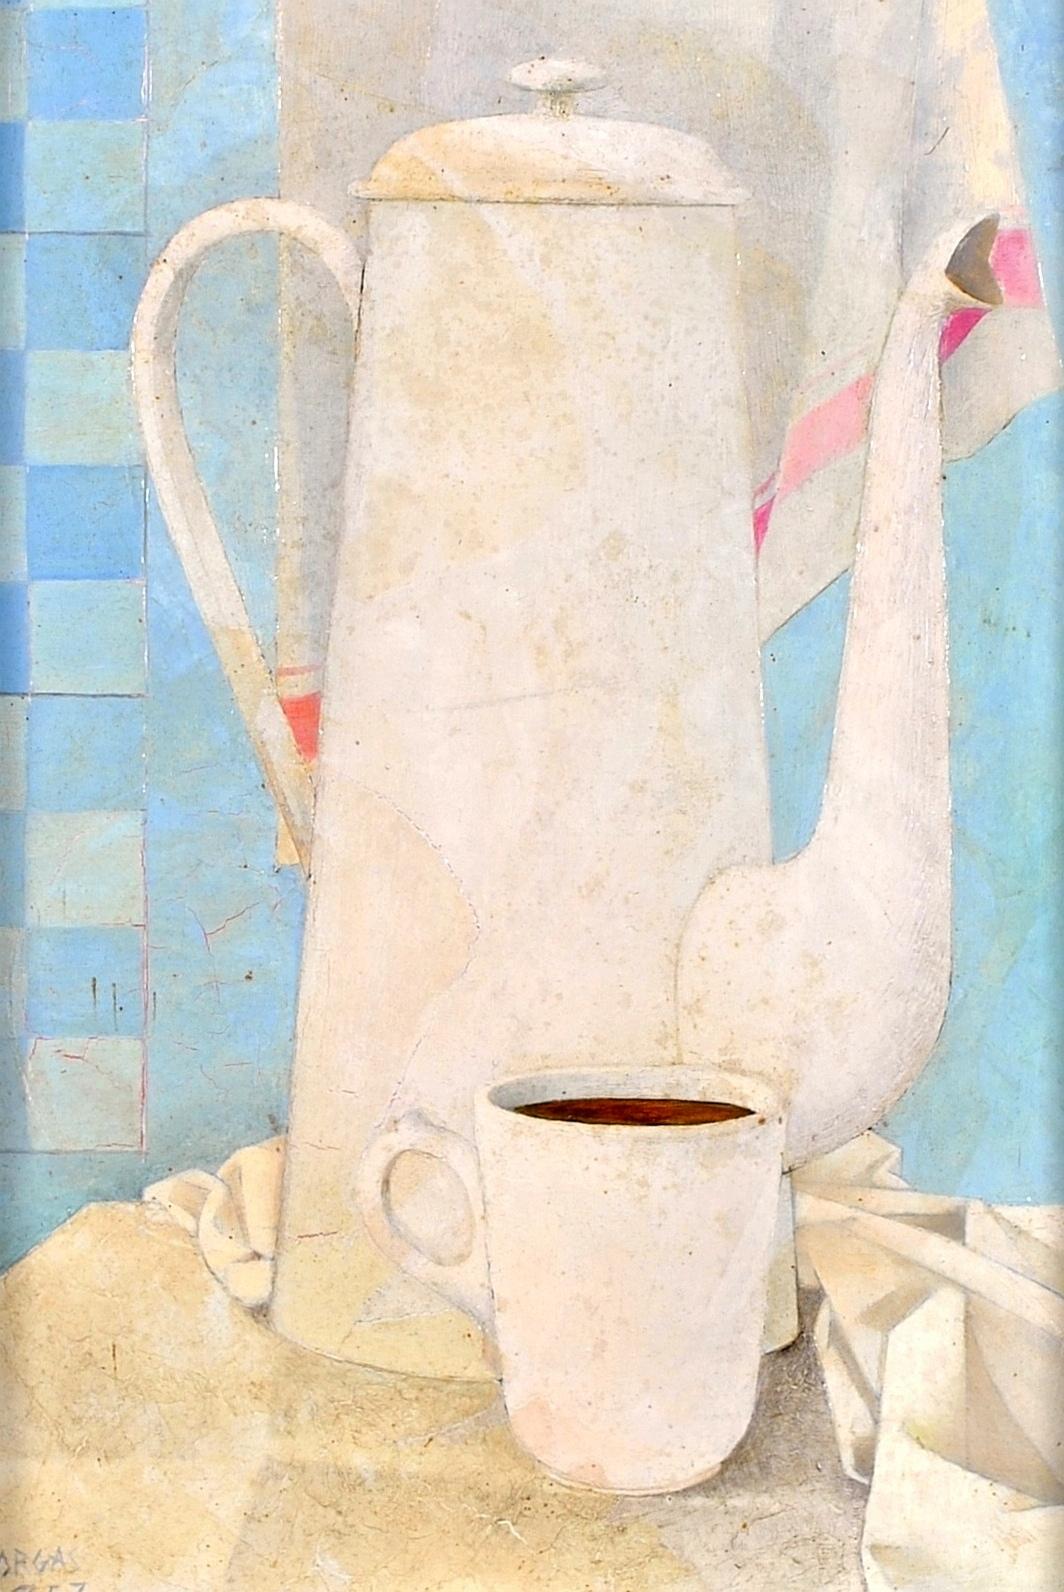 Cafetiere Blanche - Peinture à l'huile sur panneau moderniste cubiste du milieu du 20e siècle - Painting de Mid 20th Century French School